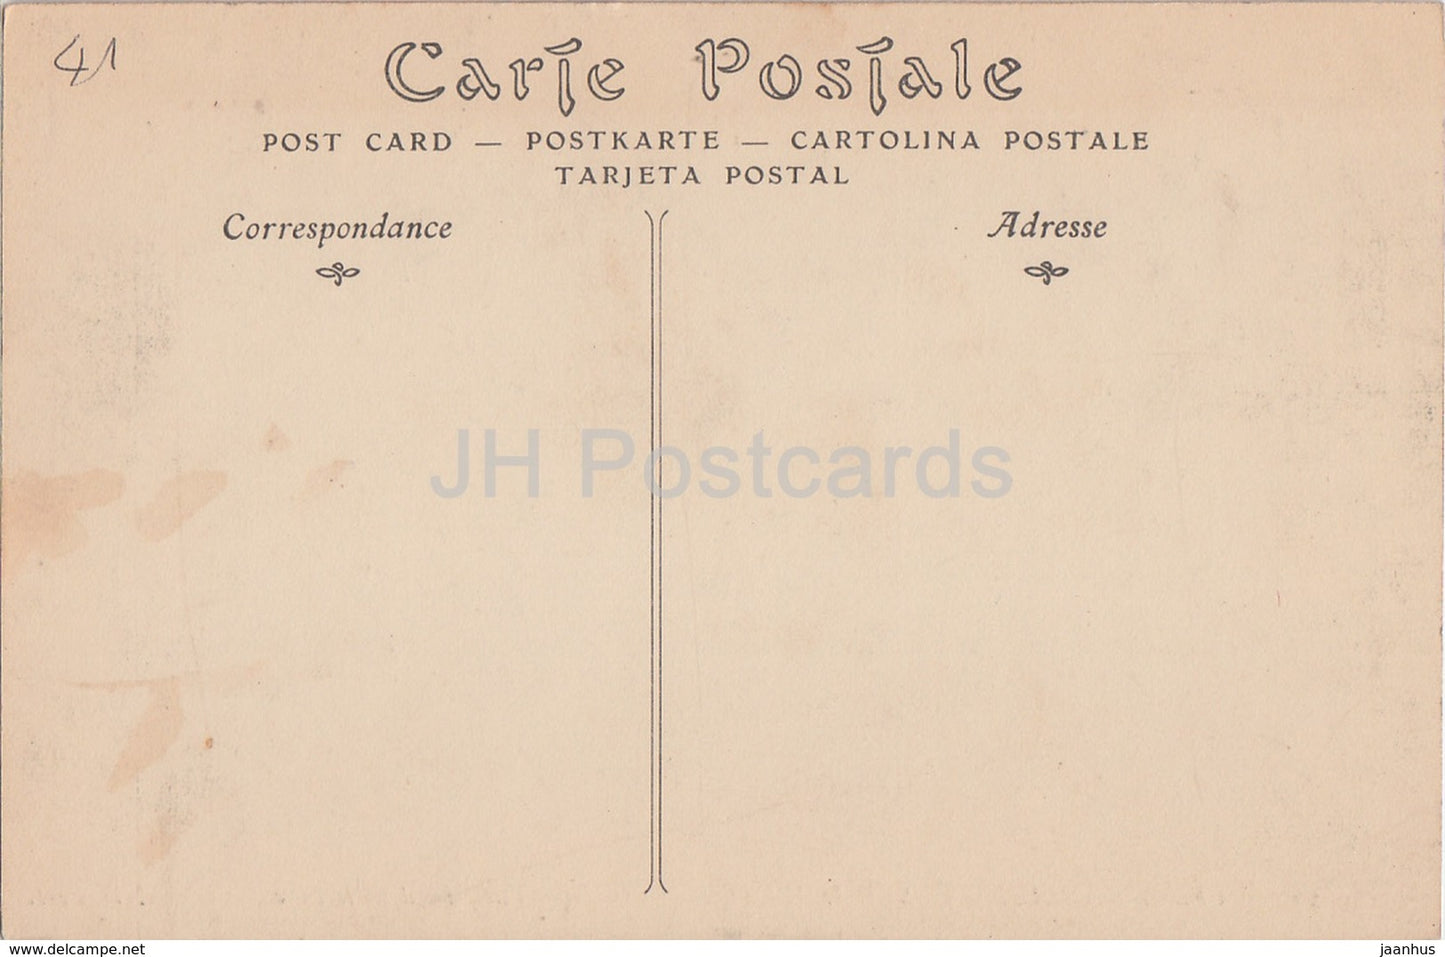 Chateau de Chaumont sur Loire - Vue Prize dans le Parc - 29 - Schloss - alte Postkarte - Frankreich - unbenutzt